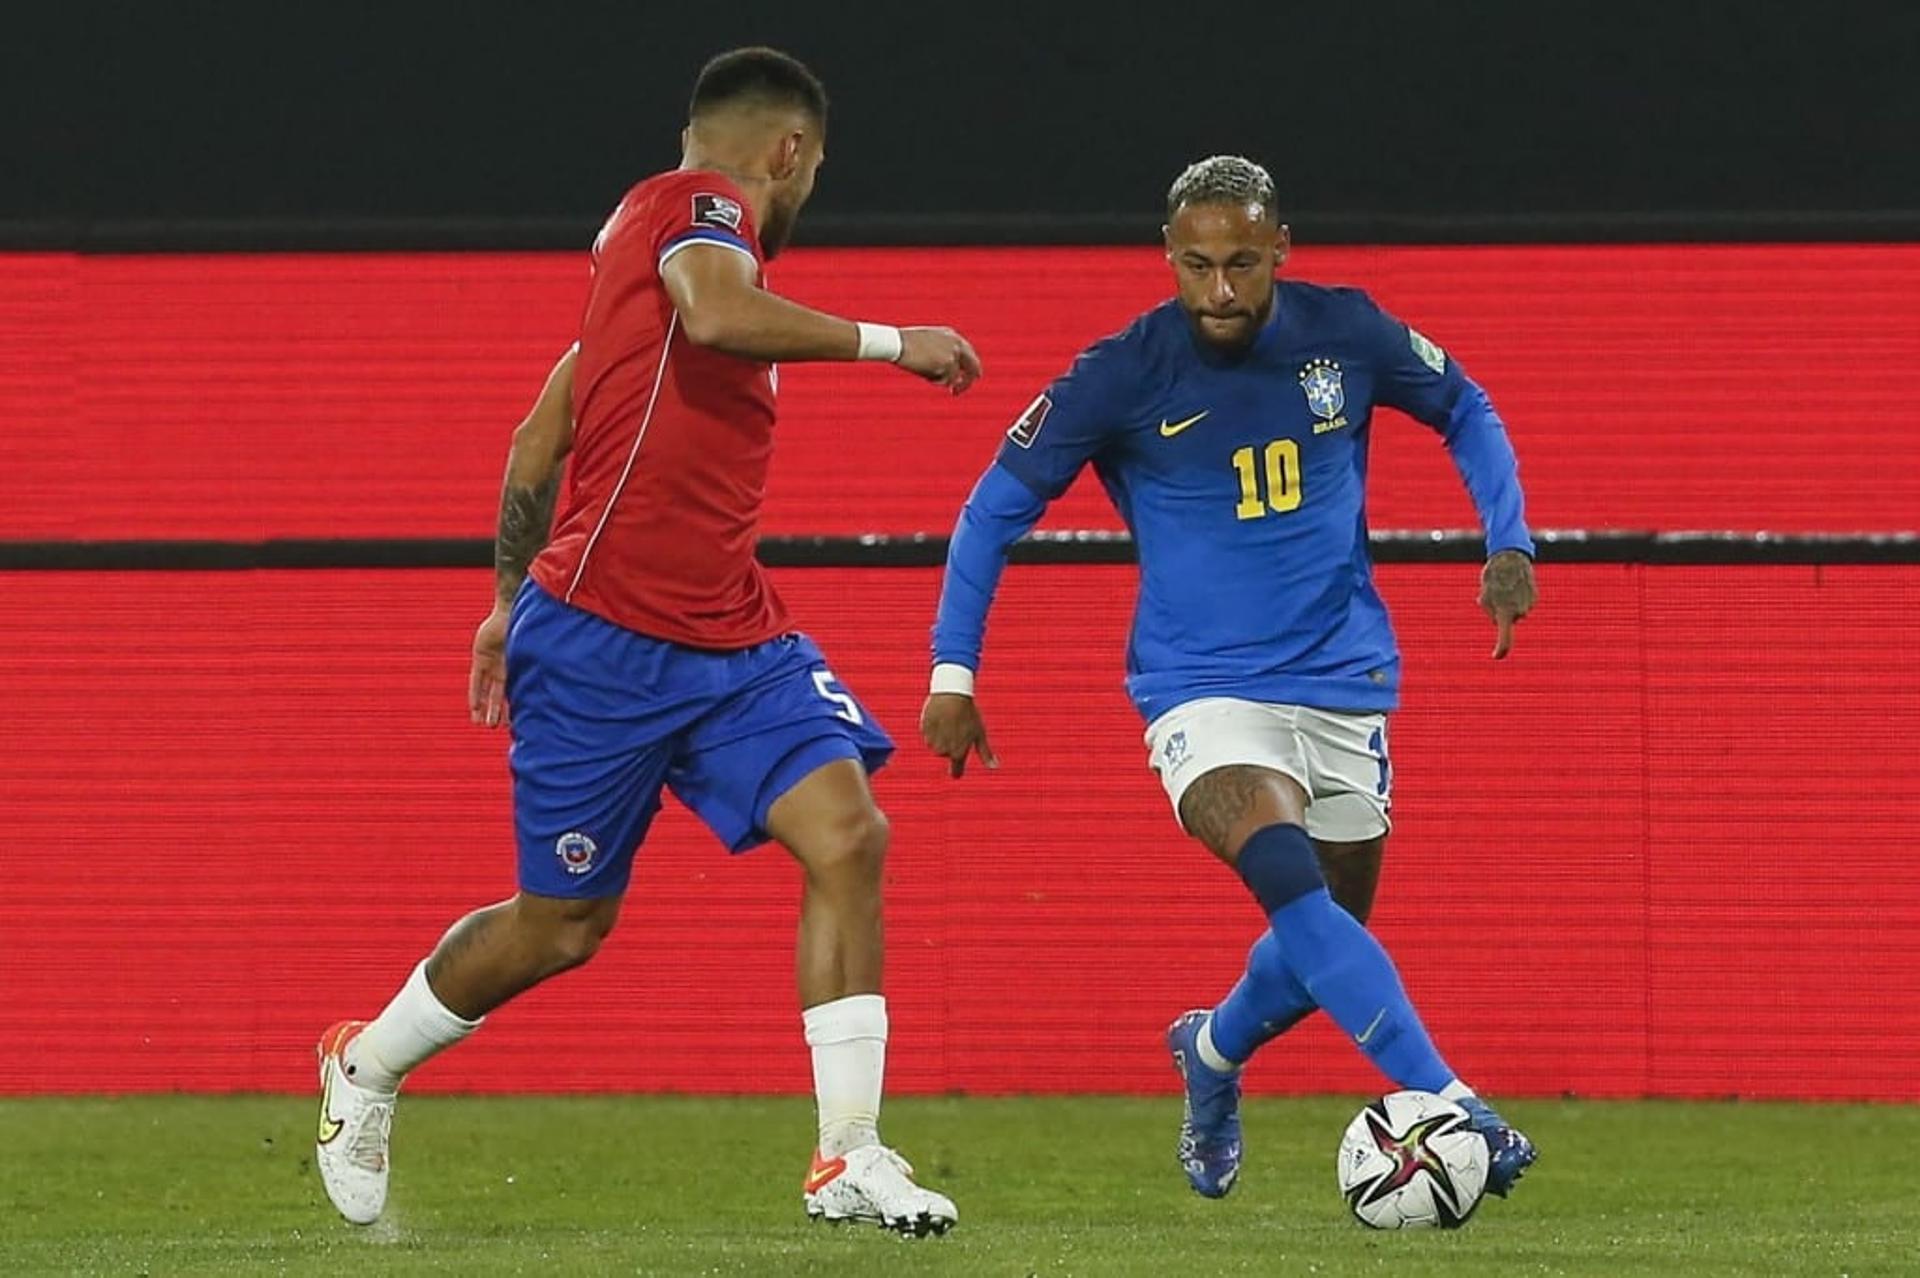 Chile x Brasil - Neymar